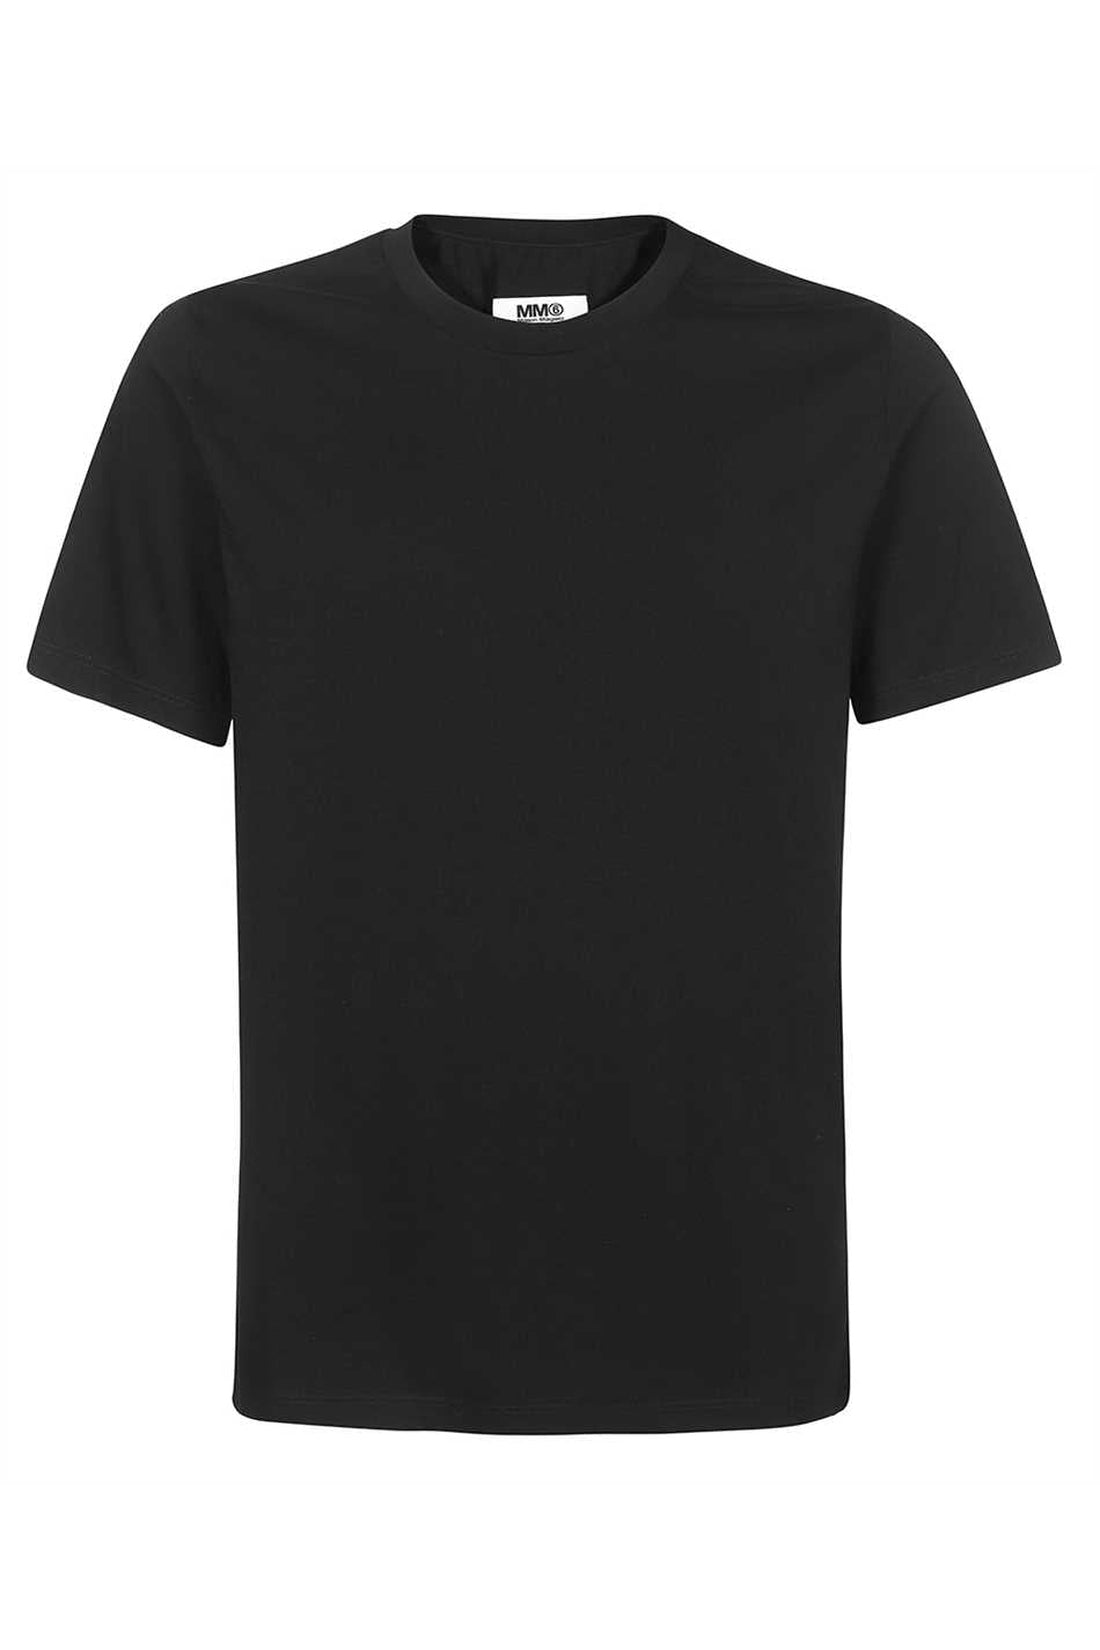 MM6 Maison Margiela-OUTLET-SALE-Printed cotton T-shirt-ARCHIVIST